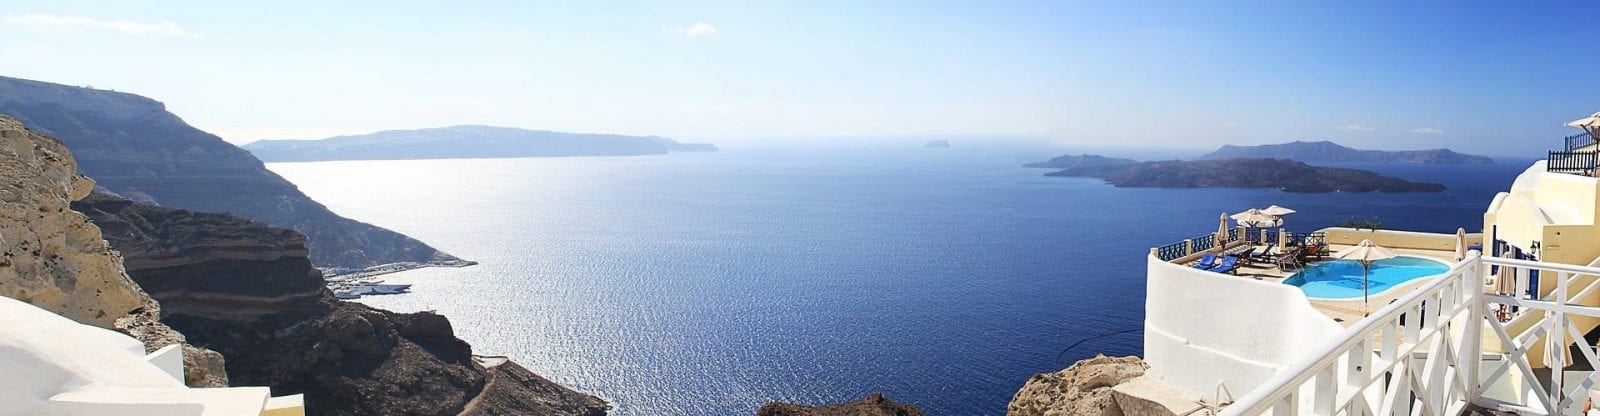 In yacht nel Mediterraneo: i ristoranti più esclusivi con panorami mozzafiato